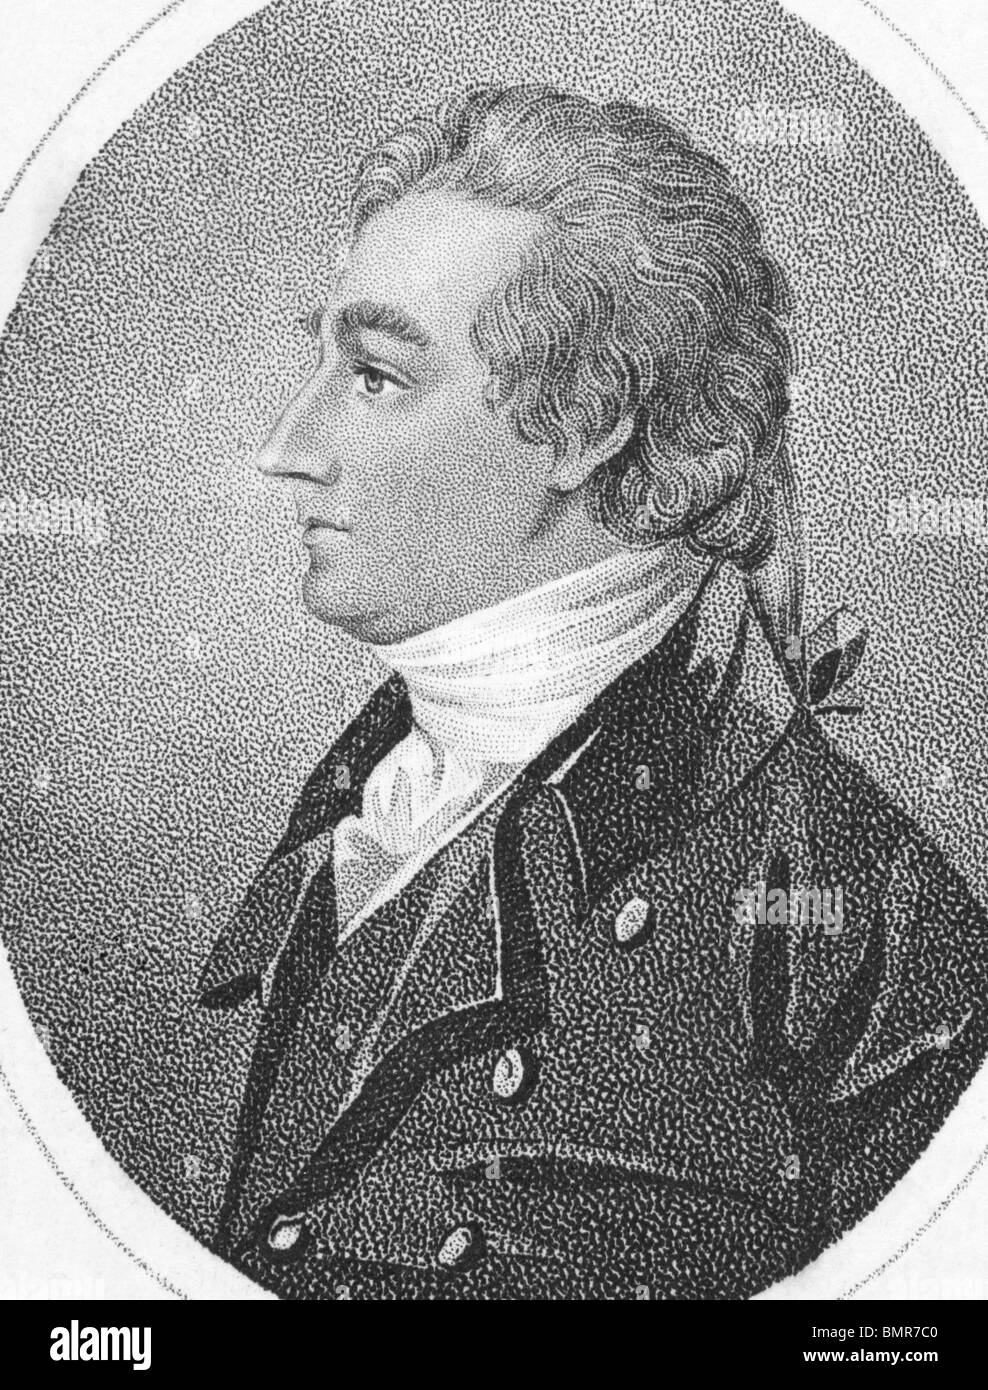 José Pastor Munden (1758-1832) sobre el grabado desde los 1800s. El actor inglés. Foto de stock